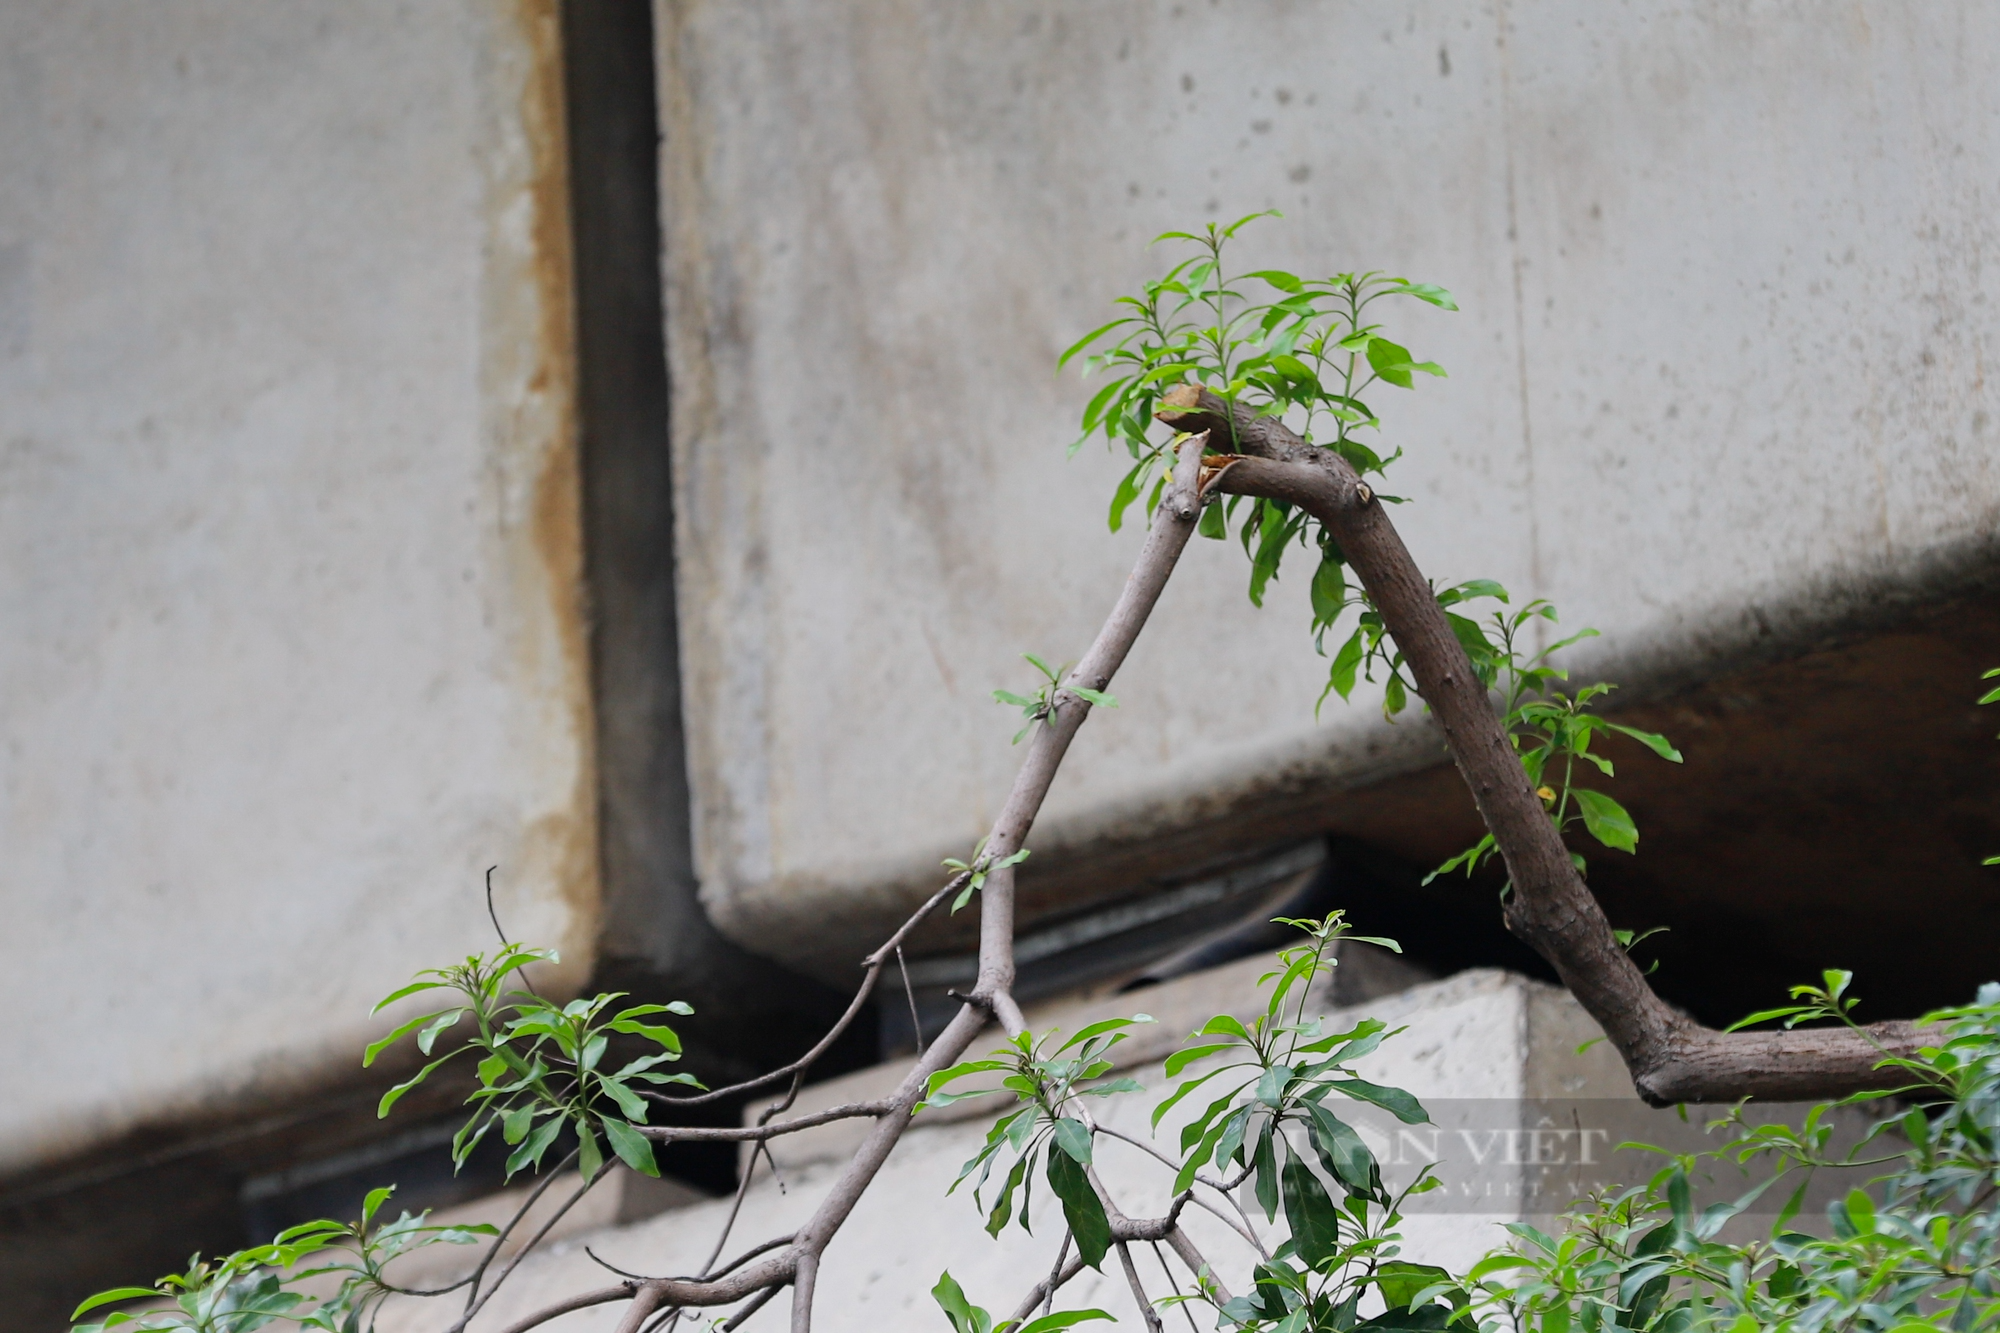 Hàng loạt cây xanh tại Hà Nội khi lớn đã “đụng” vào gầm bê tông đường sắt Cát Linh-Hà Đông - Ảnh 3.